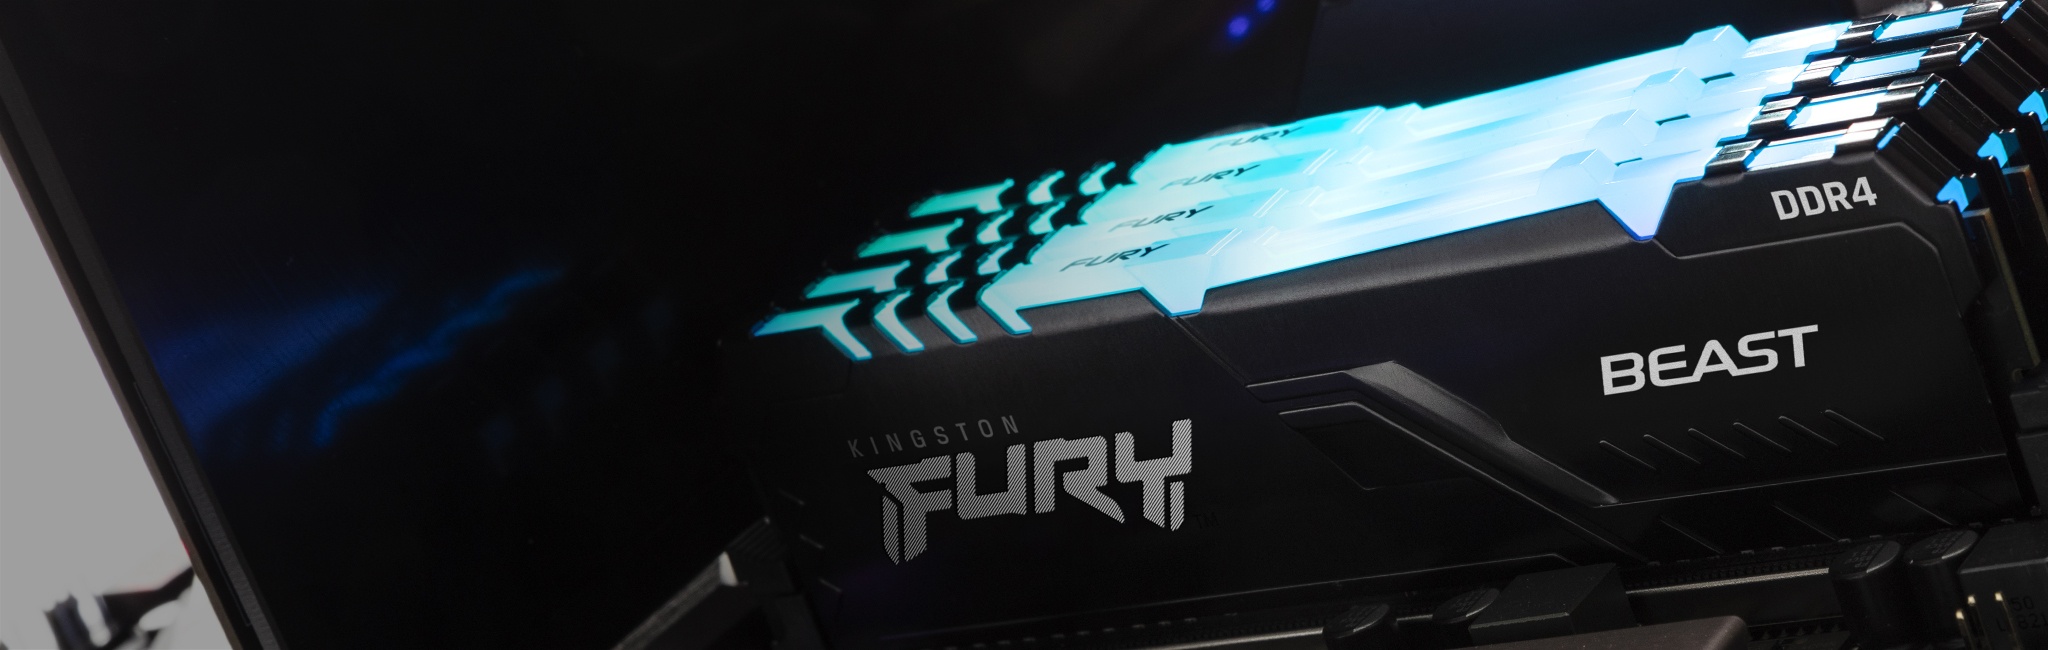 Kingston Fury Beast RGB مثبت على جهاز كمبيوتر مع توهج أزرق من أعلى الوحدة النمطية